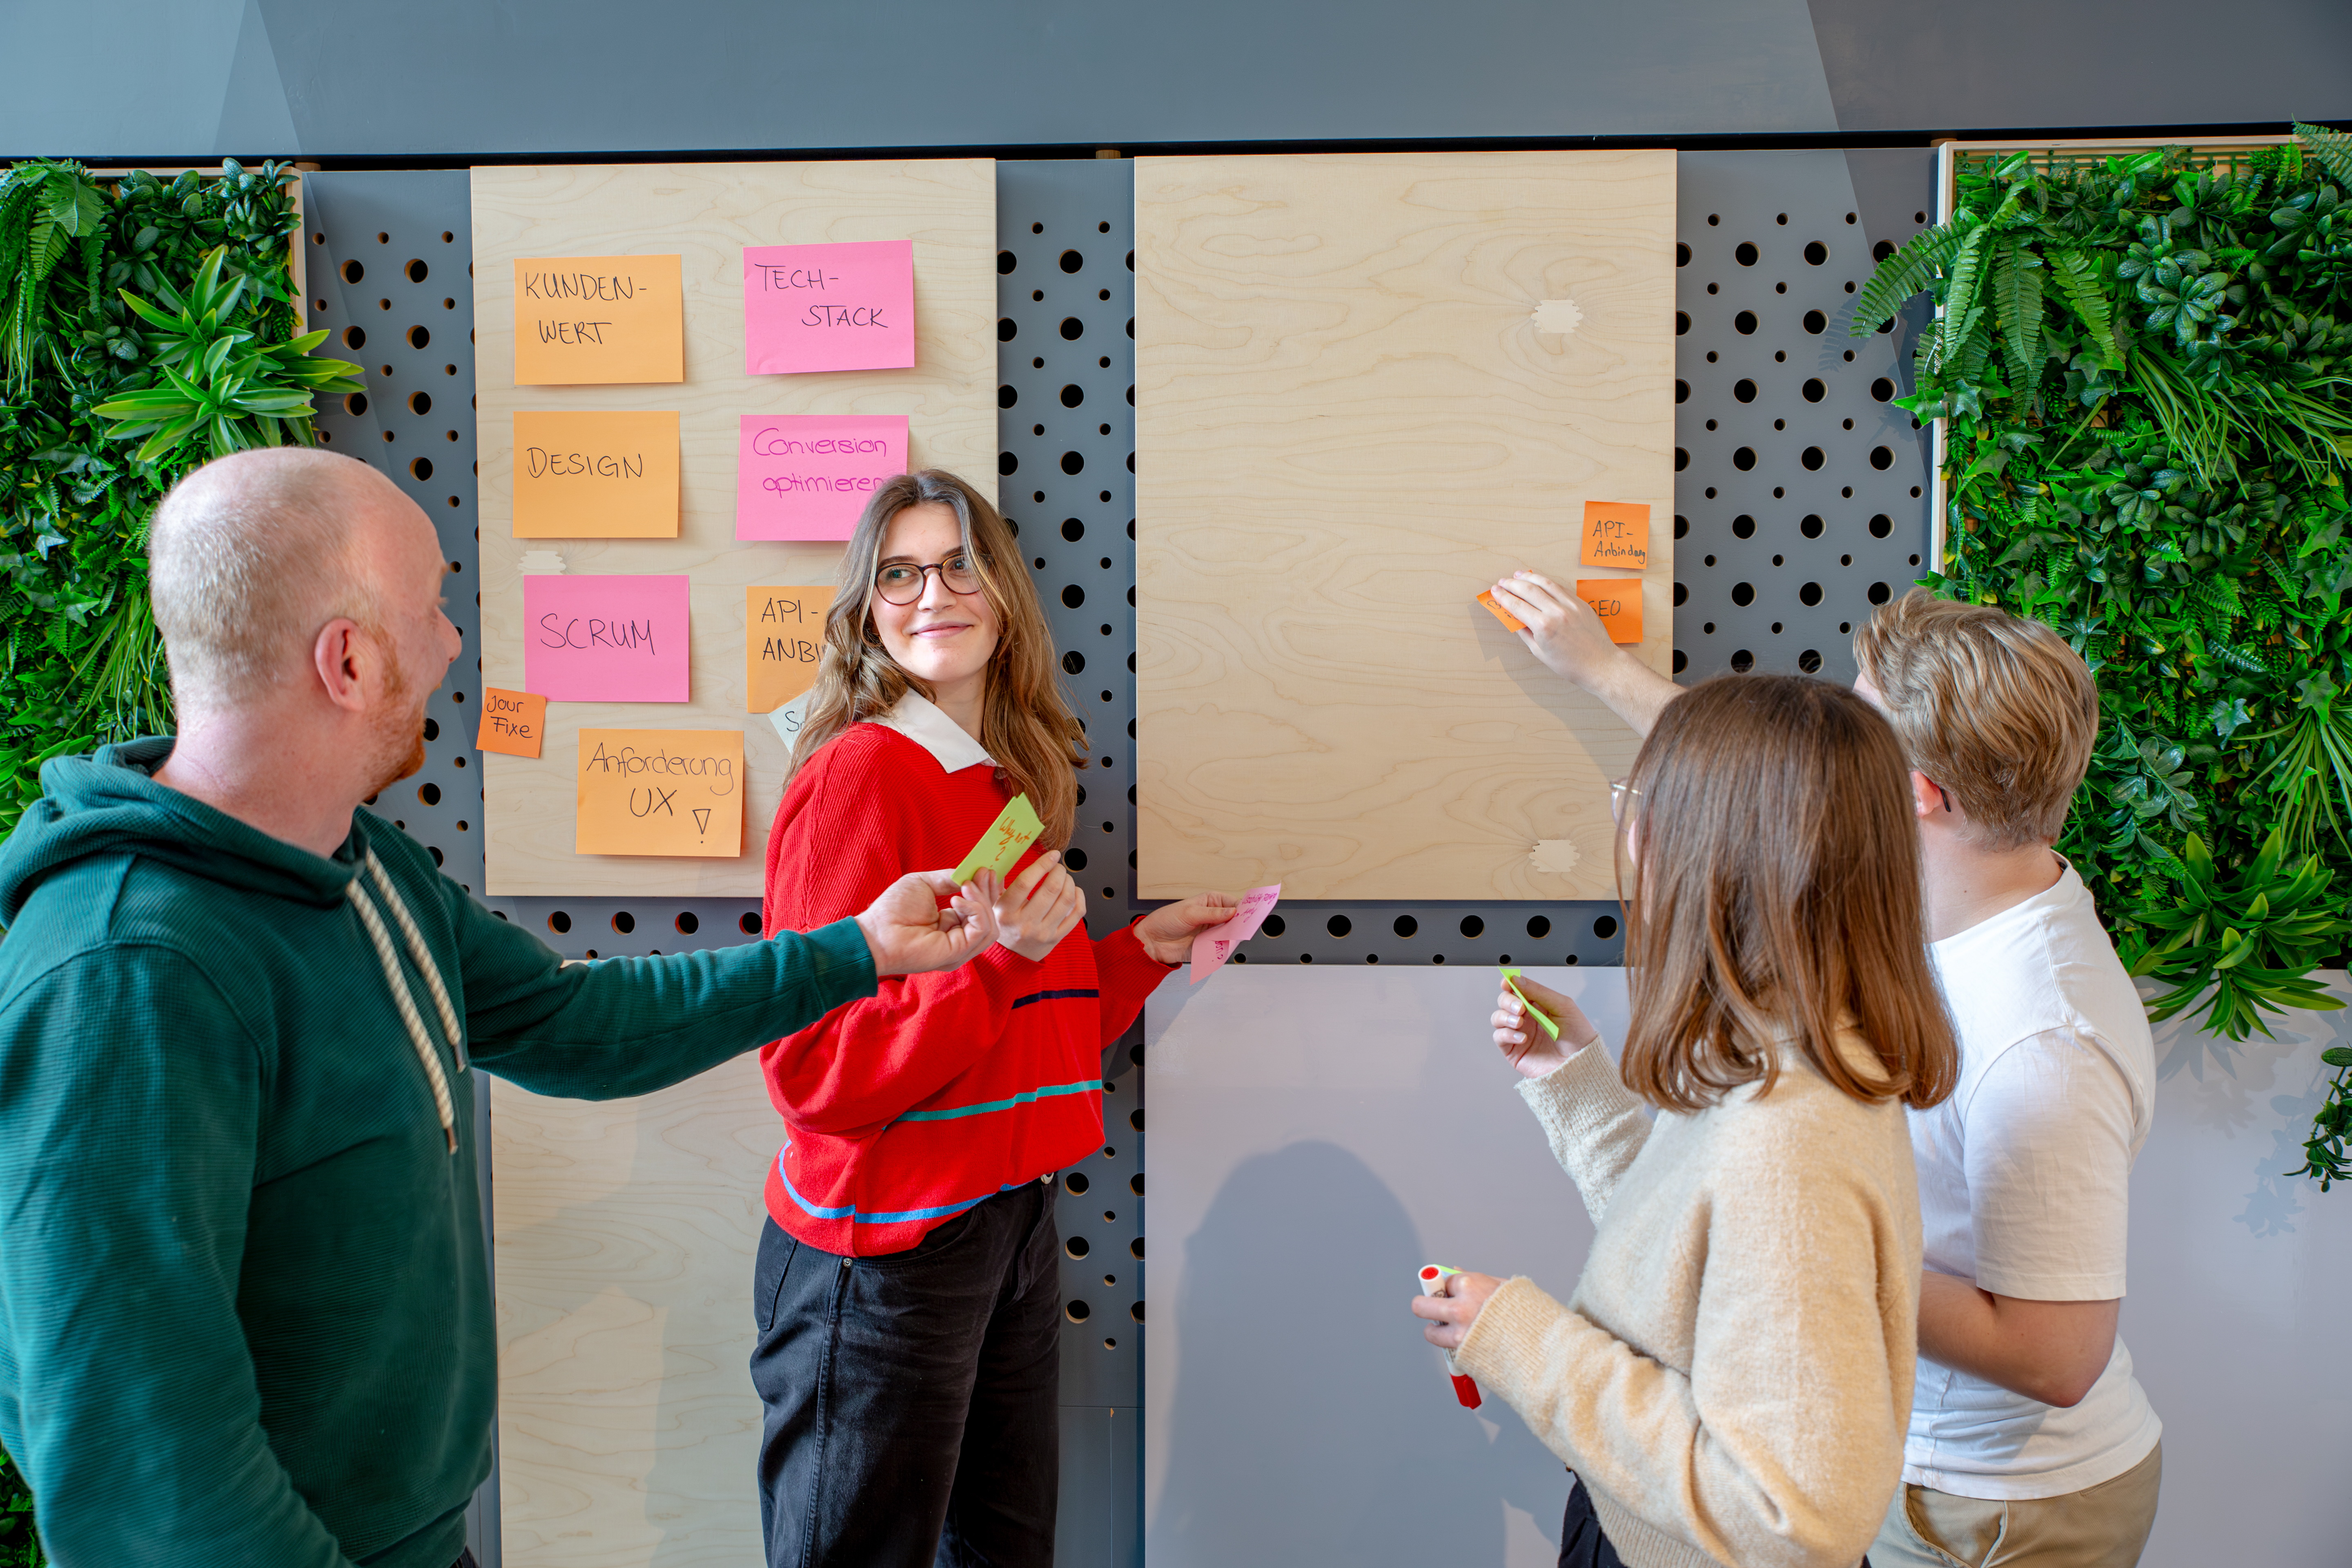 Vier Designer:innen stehen an einem Whiteboard und brainstormen gemeinsam. Die Person im Vordergrund reicht einem anderen Designer:in ein Post-it.